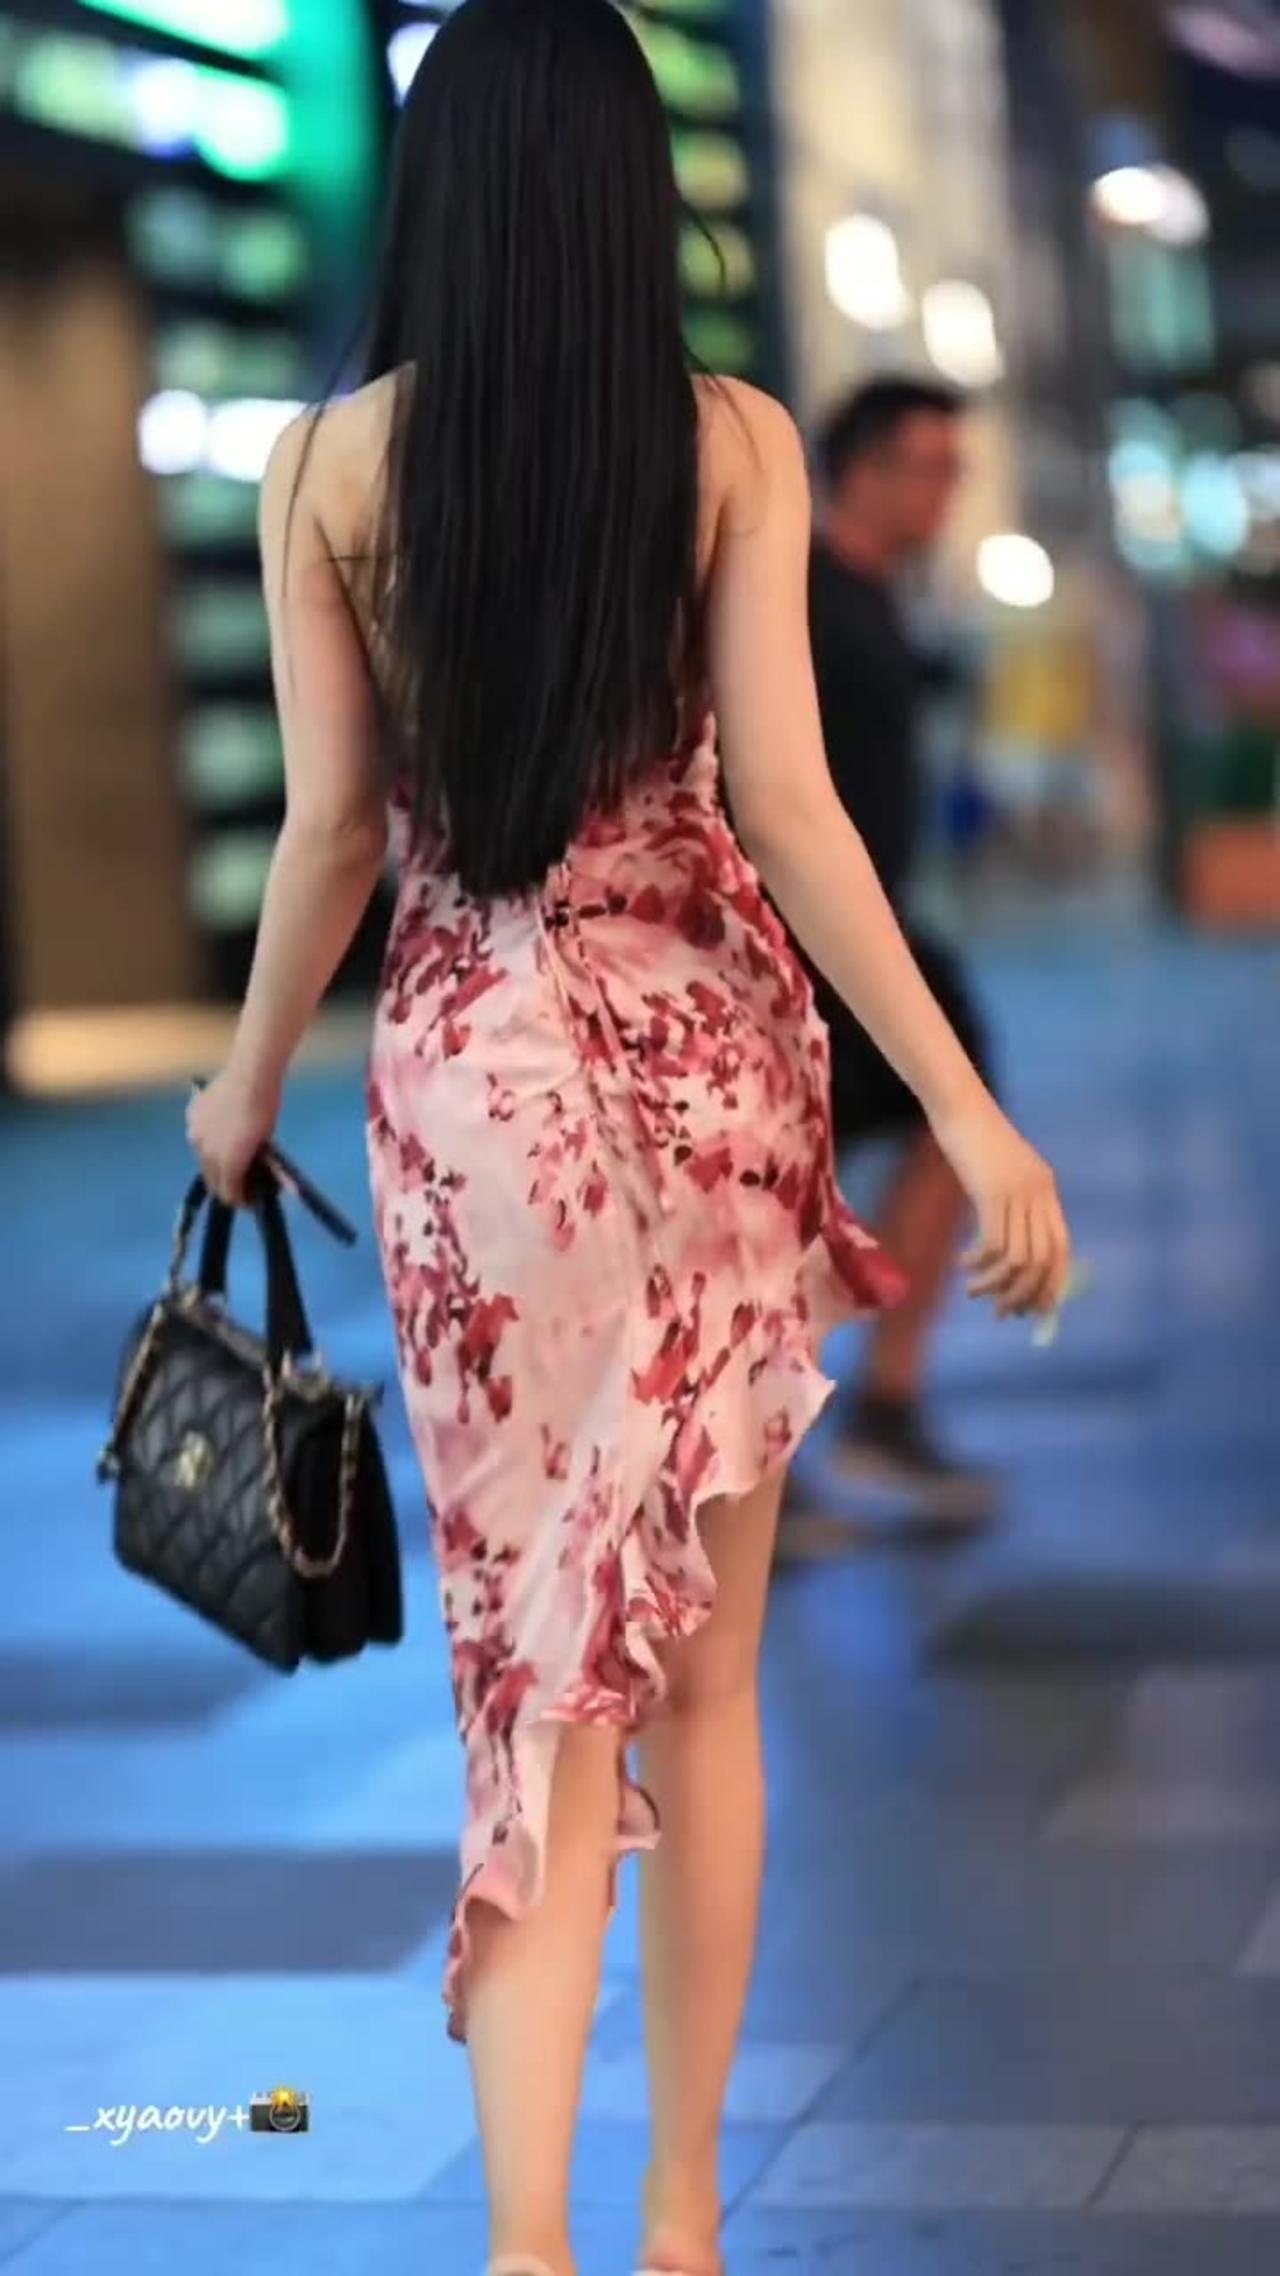 Chinese street fashion